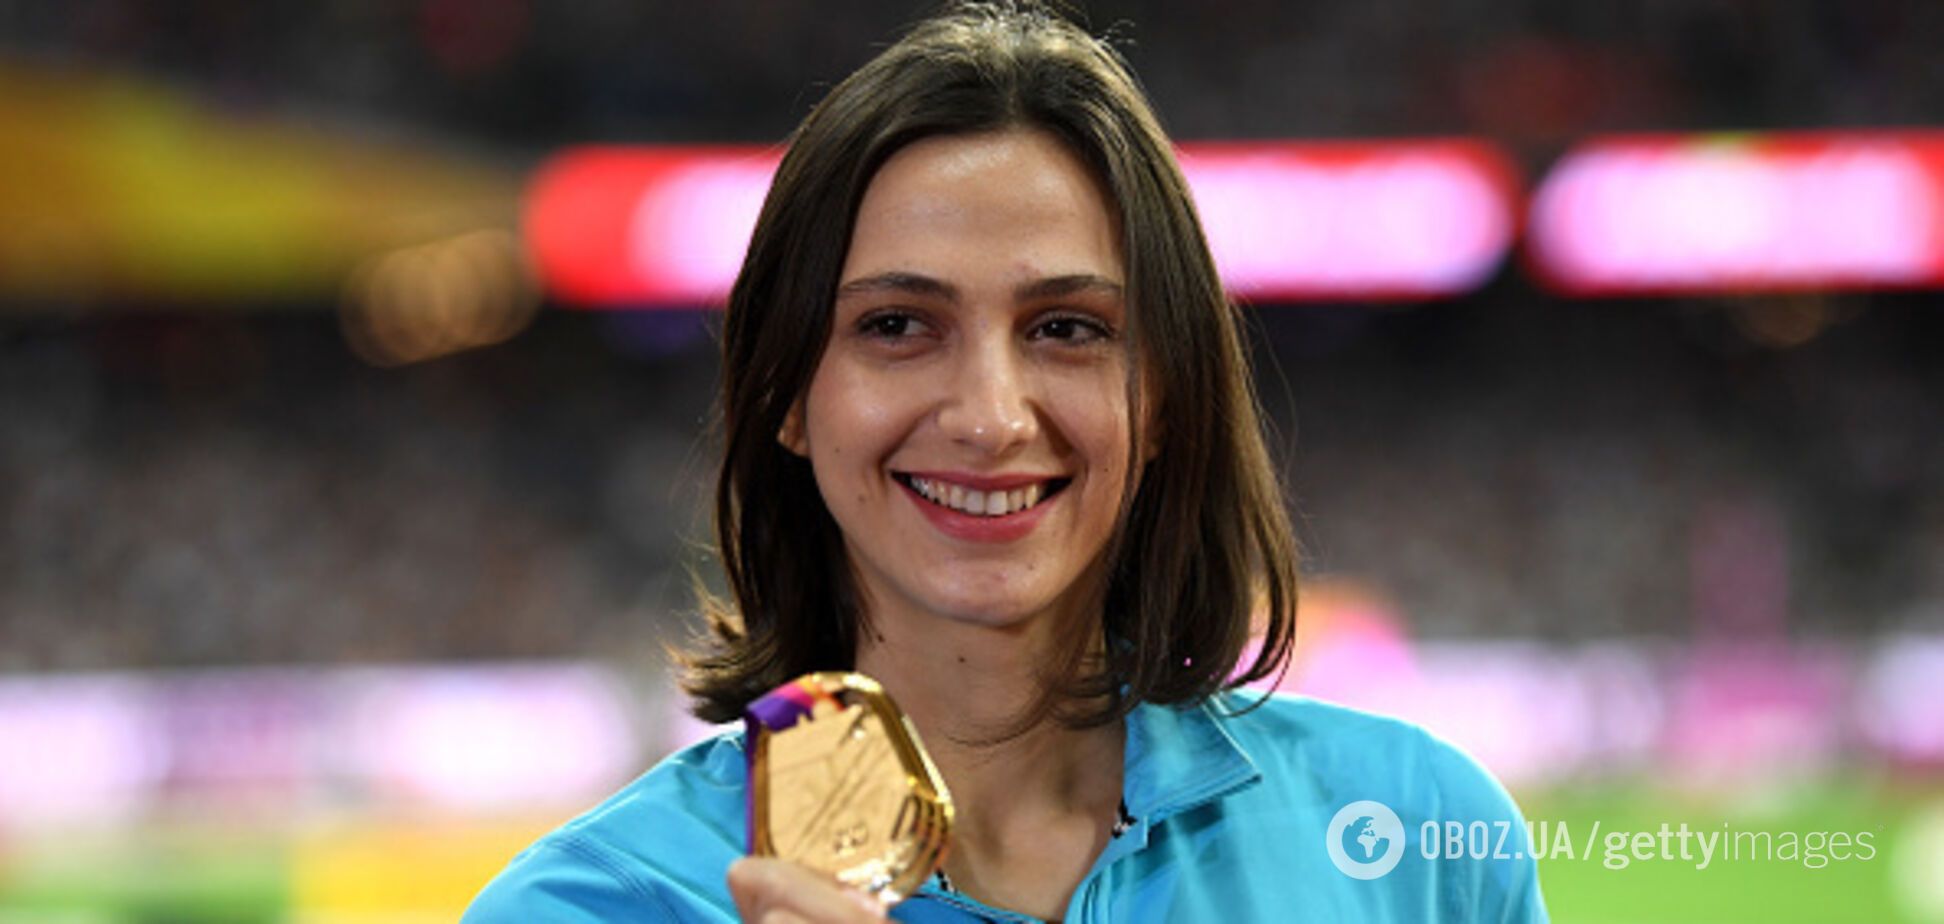 'Уже третій рік': олімпійська чемпіонка з Росії розповіла, що носить форму з дірками через санкції